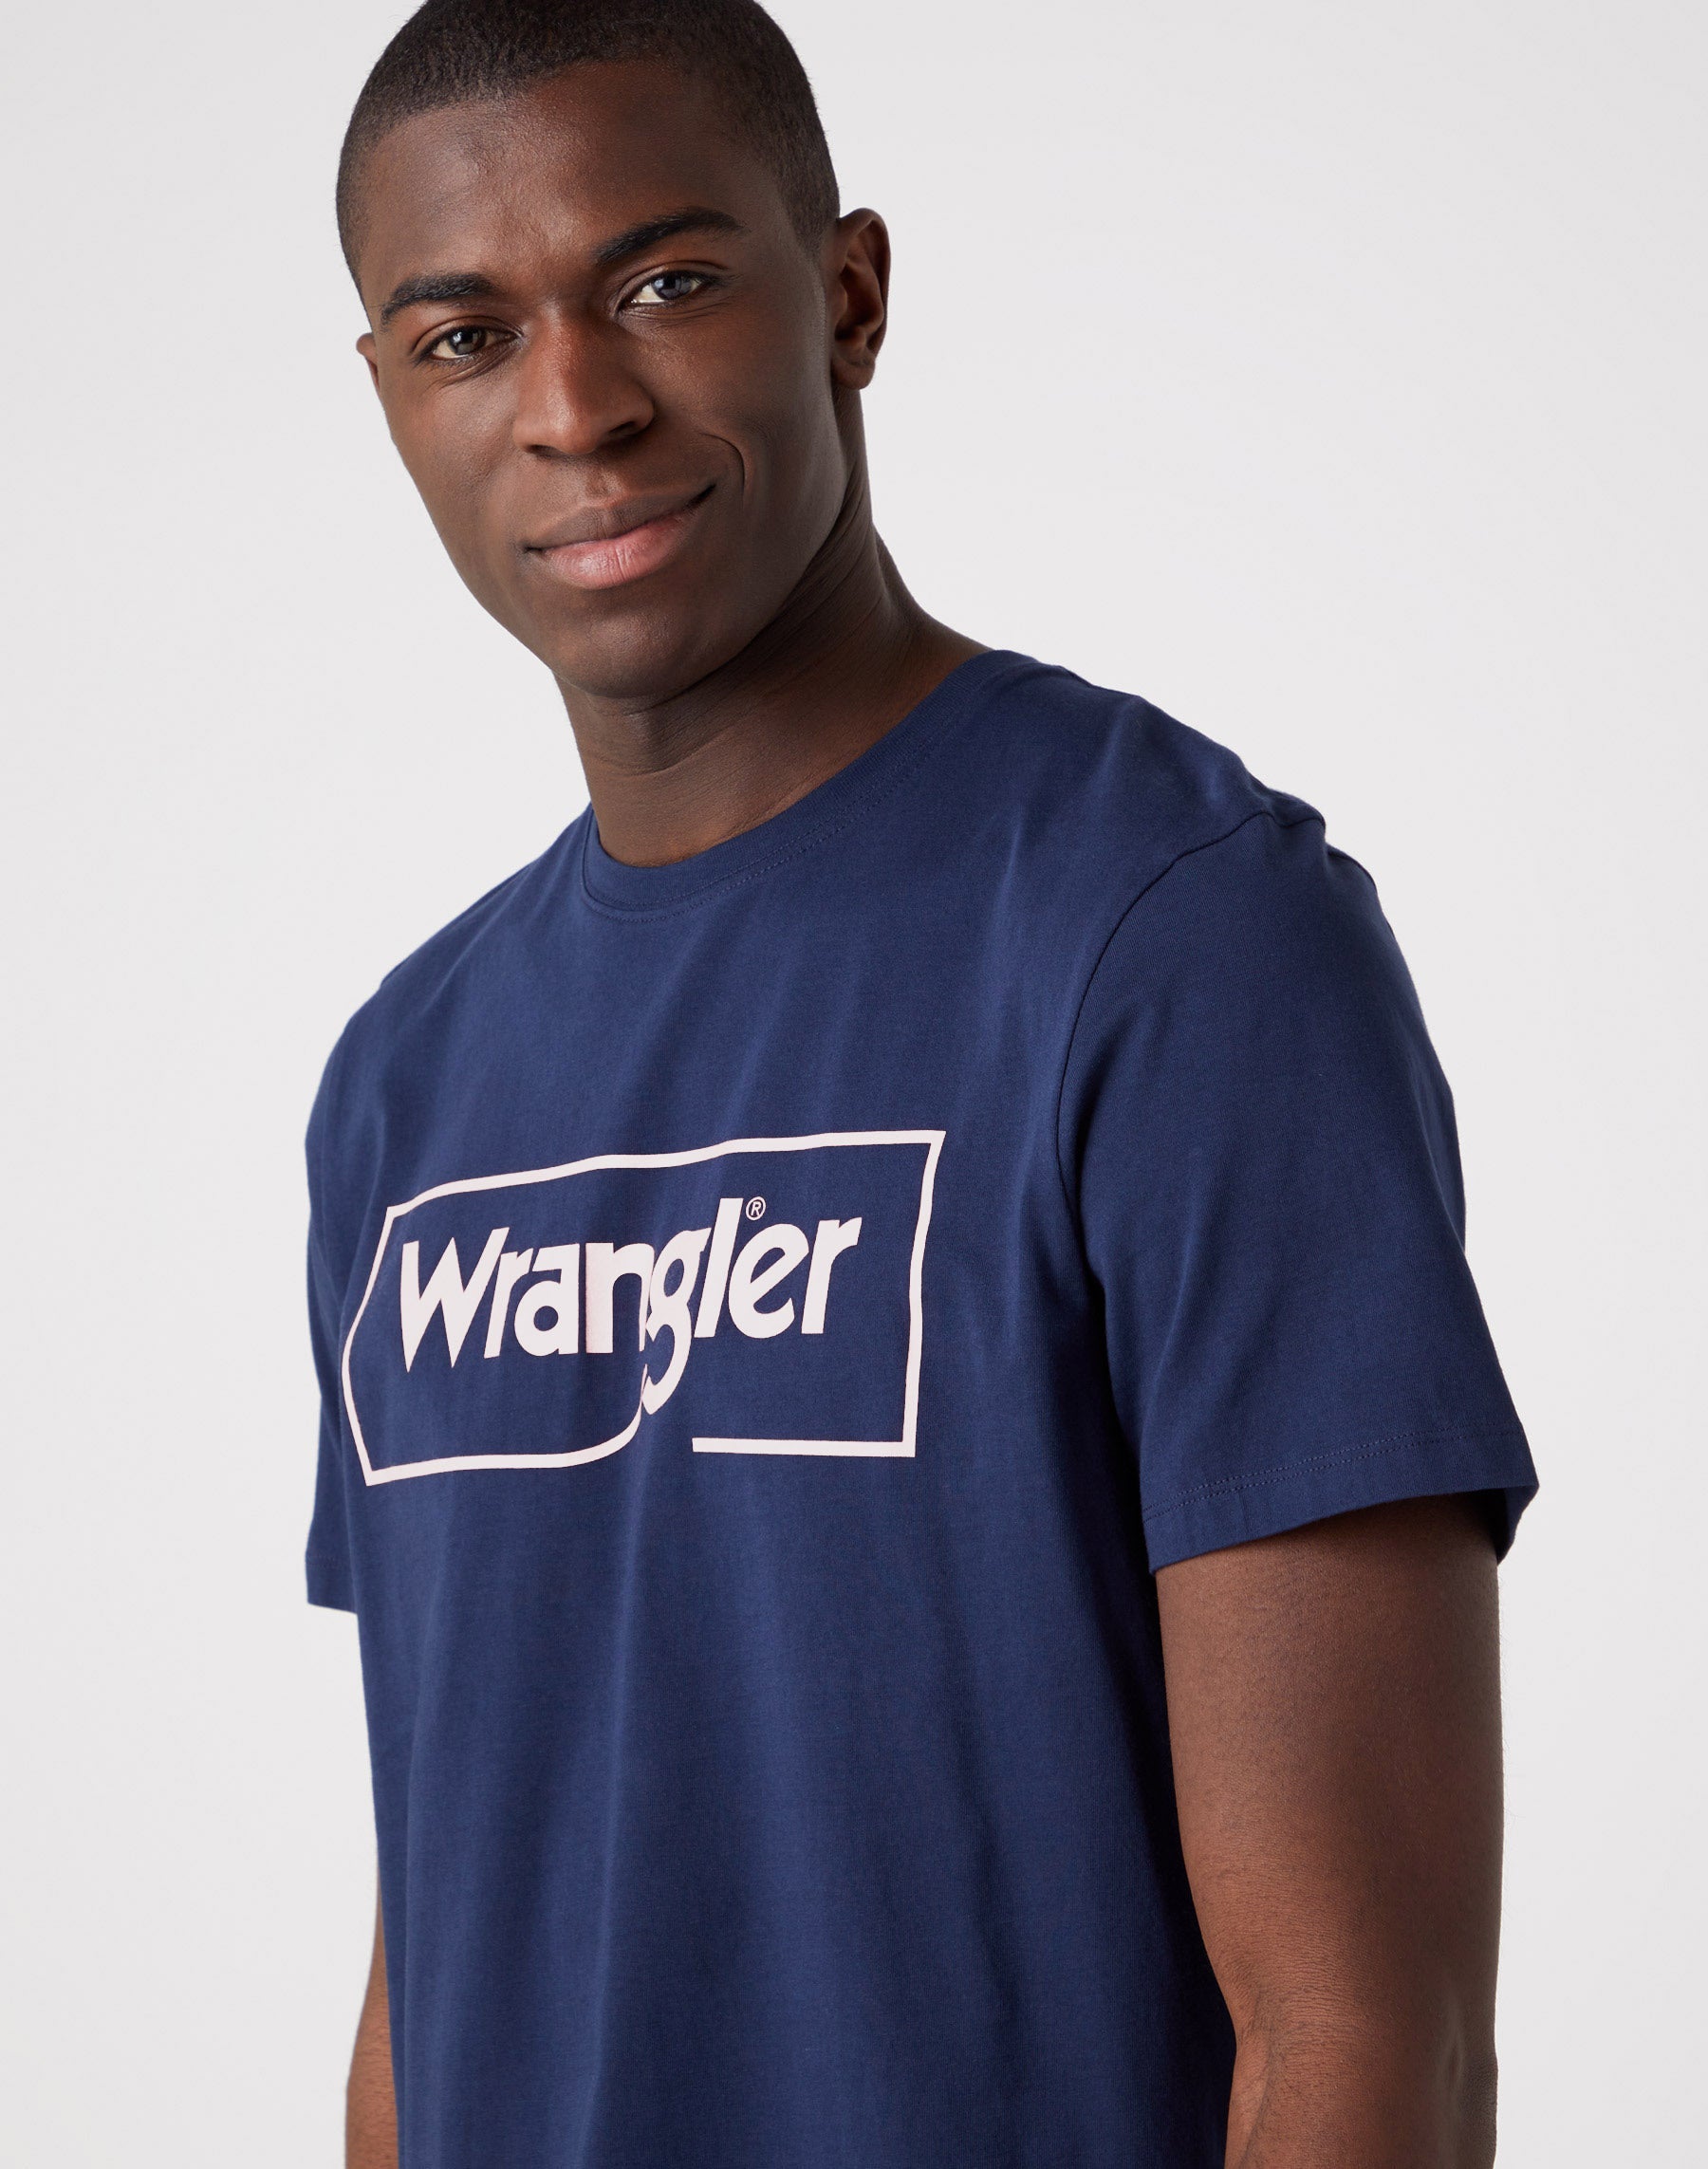 Frame Logo Tee in Navy T-Shirts Wrangler   